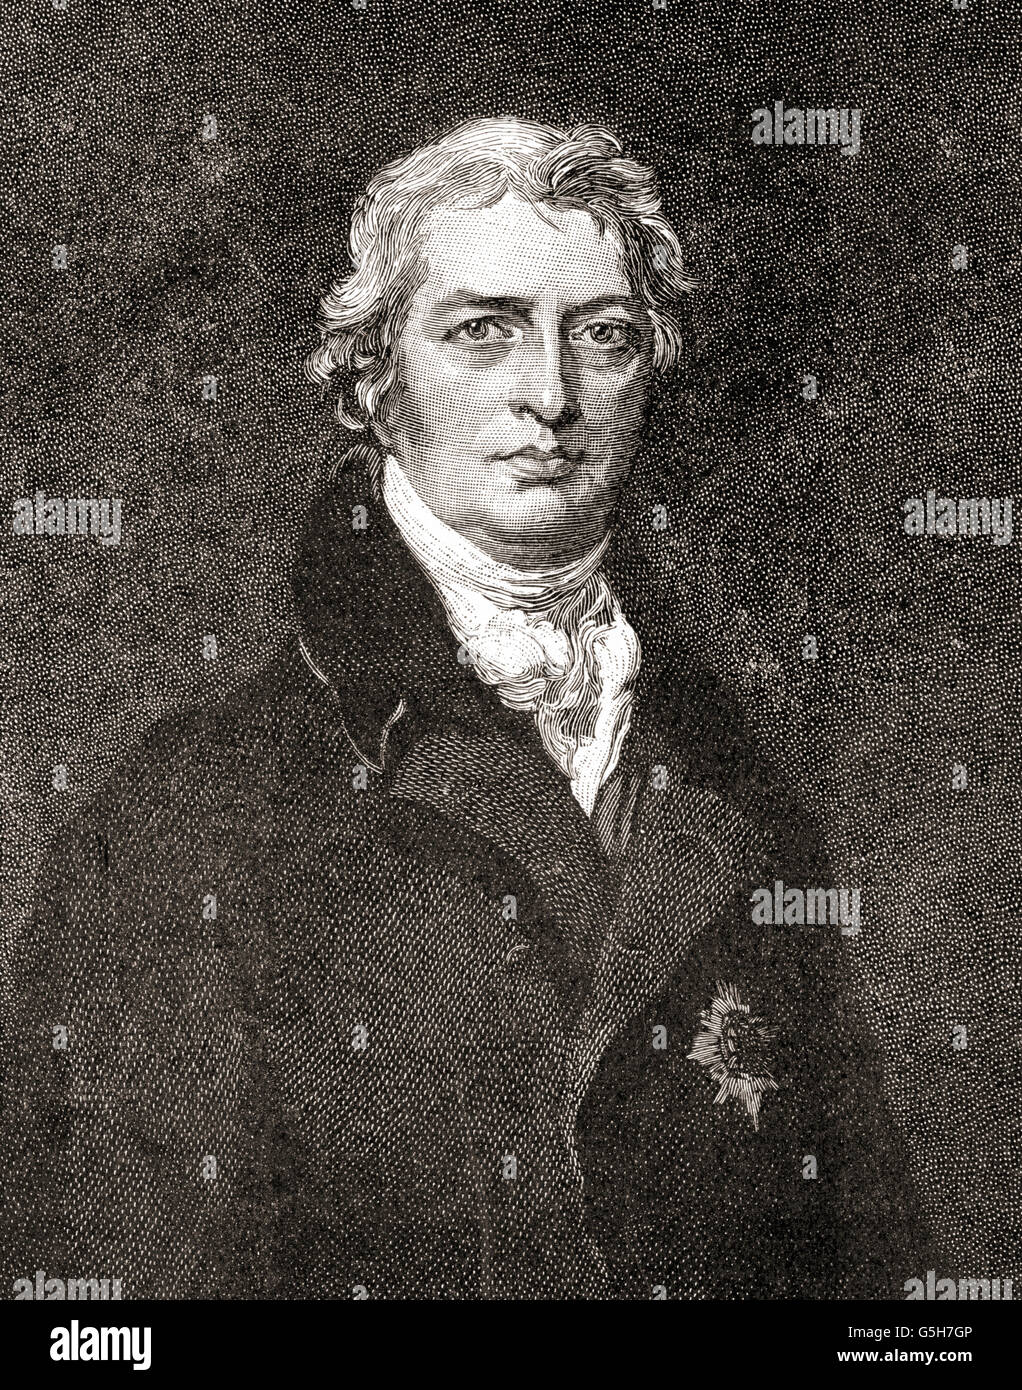 Robert Banks Jenkinson, segundo Conde de Liverpool, 1770 - 1828. Político inglés y el Primer Ministro del Reino Unido. Foto de stock